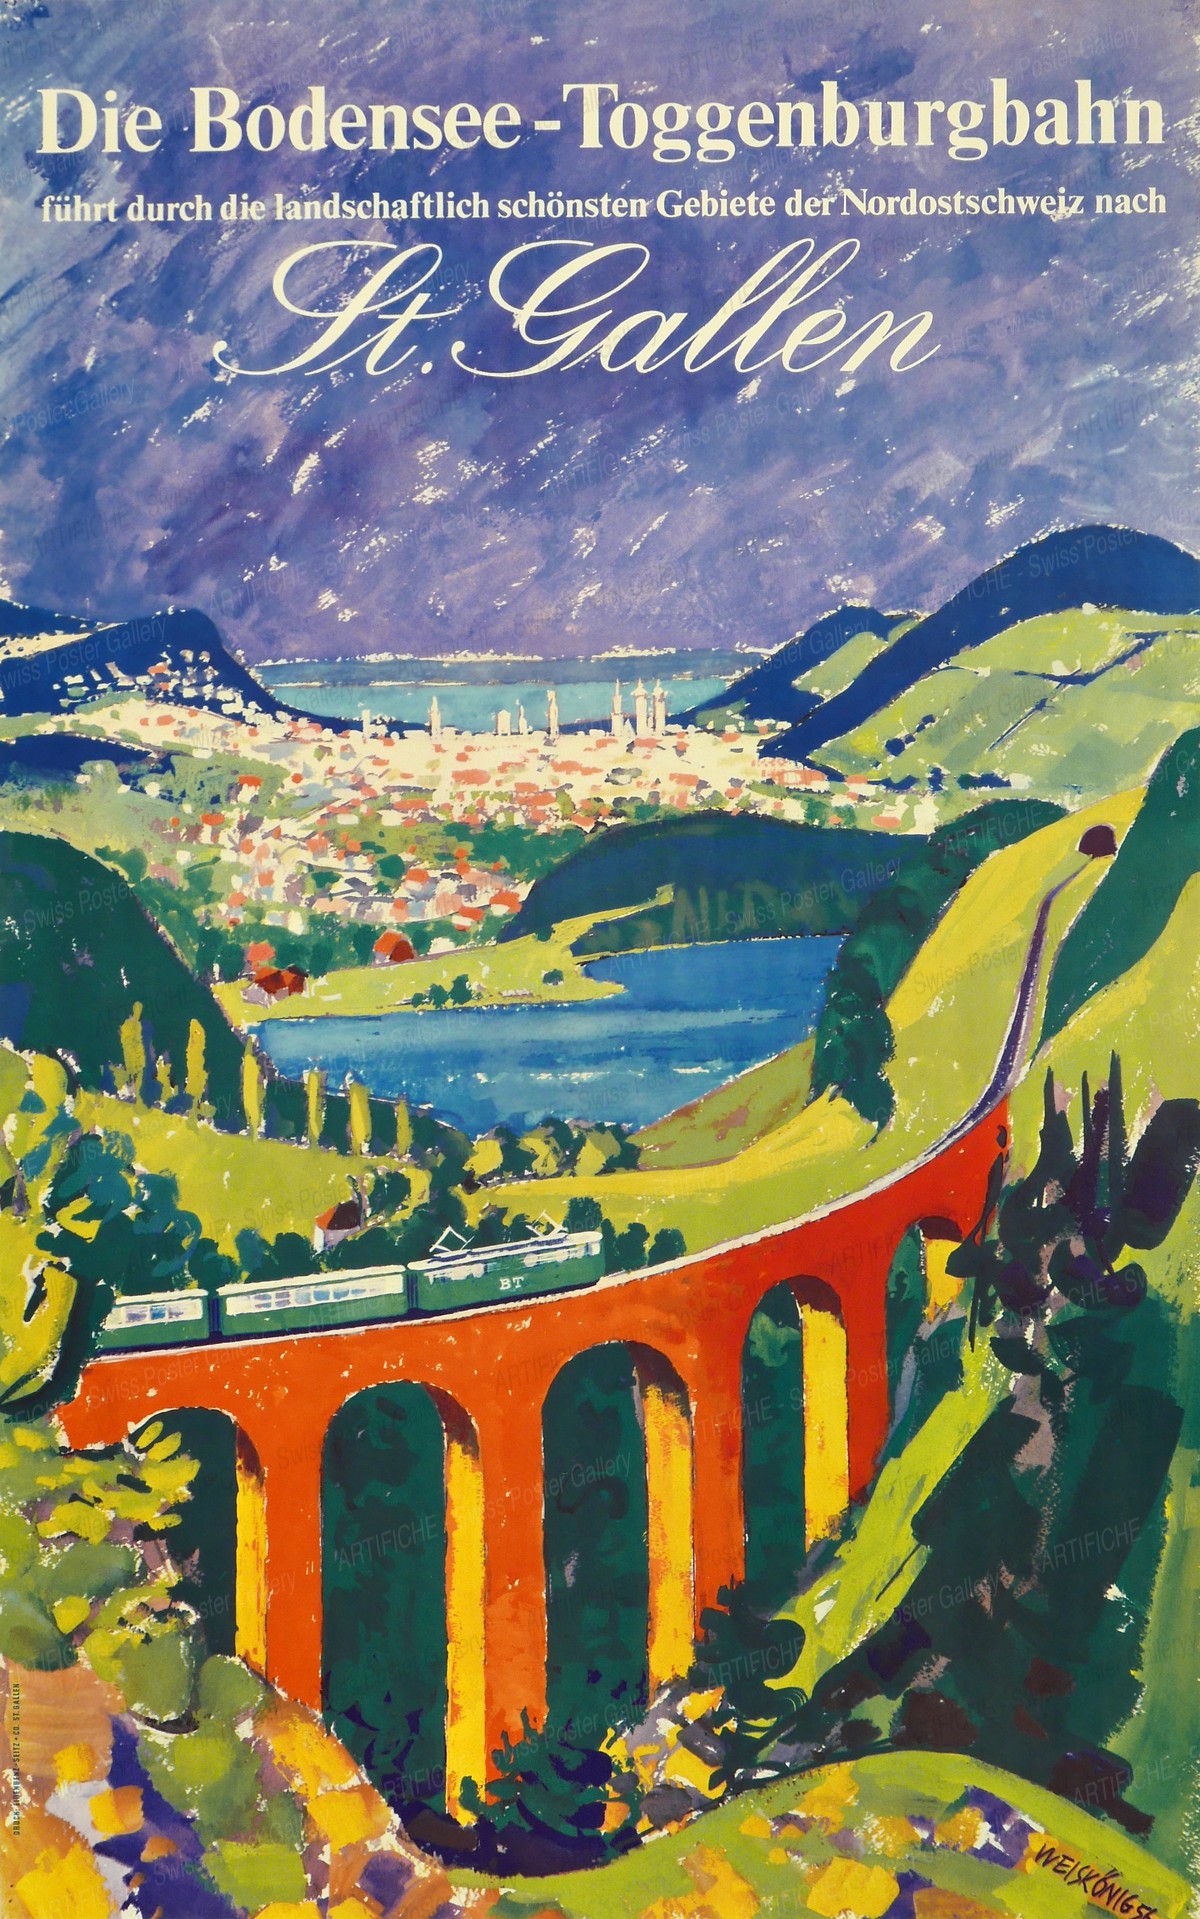 Die Bodensee – Toggenburgbahn – St. Gallen, Werner Weiskönig